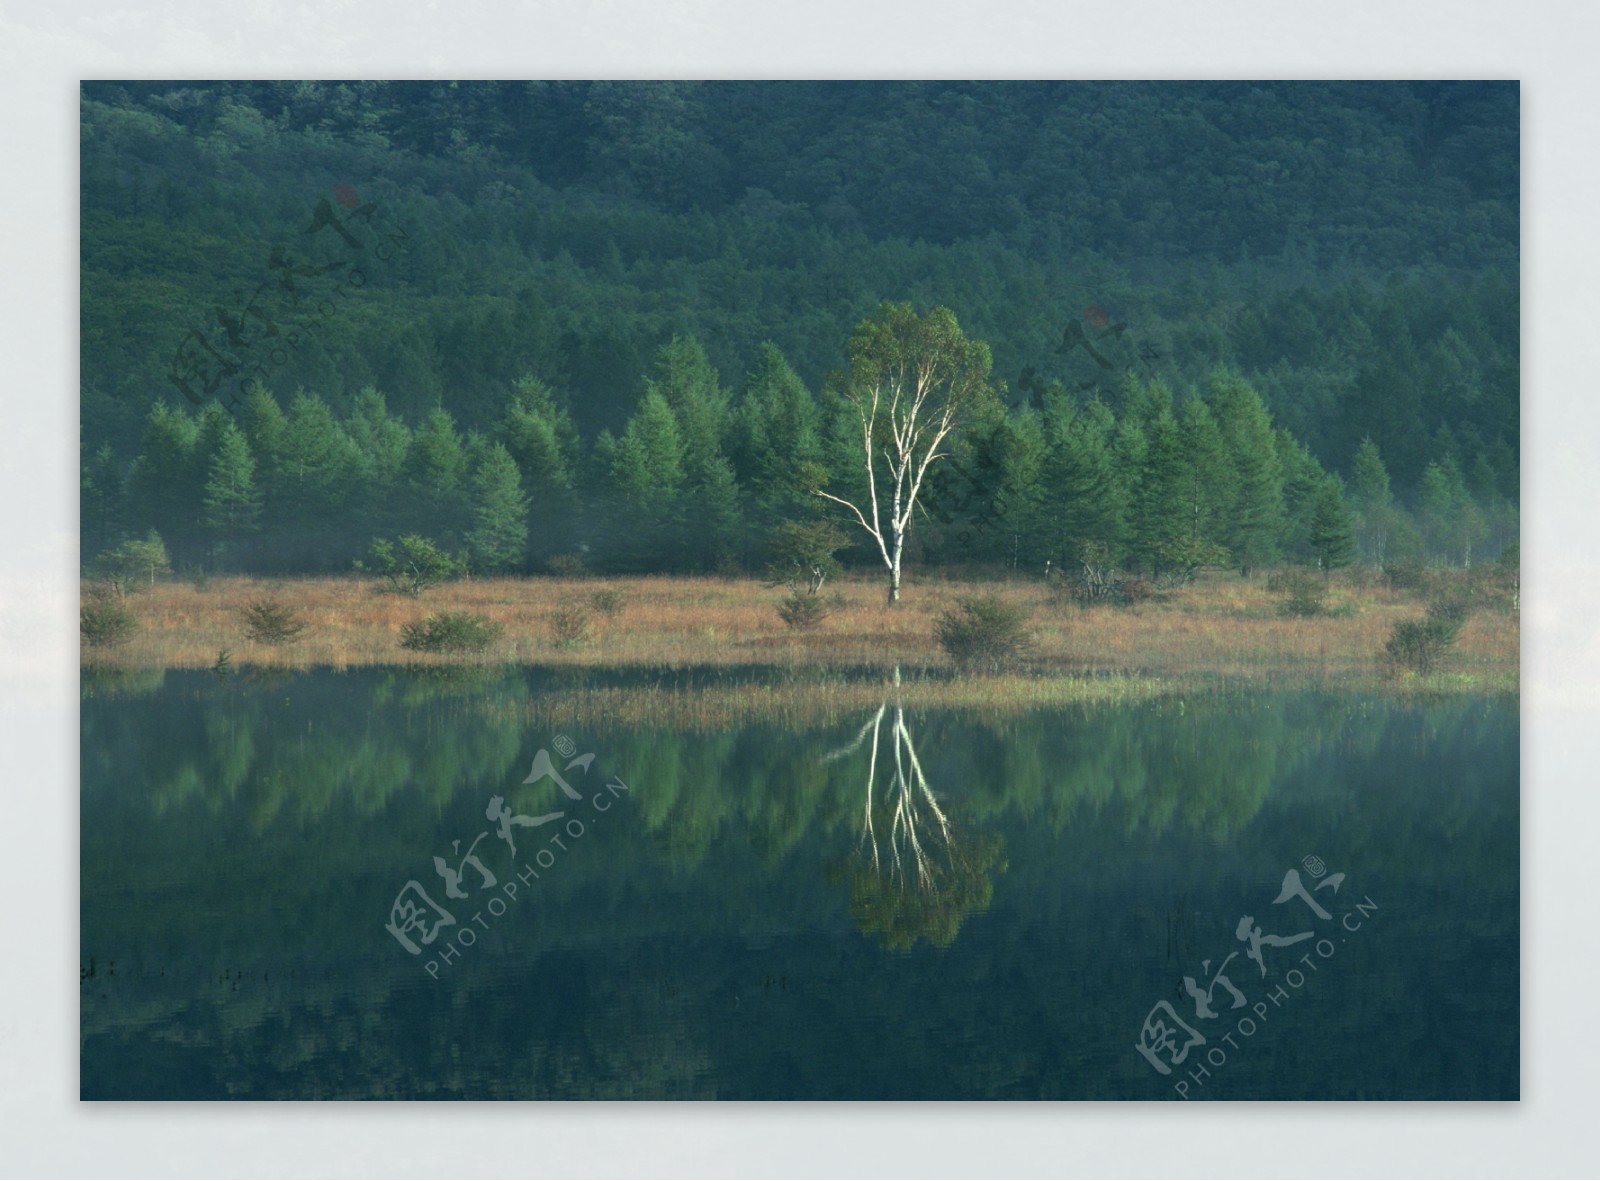 湖泊美景摄影图片